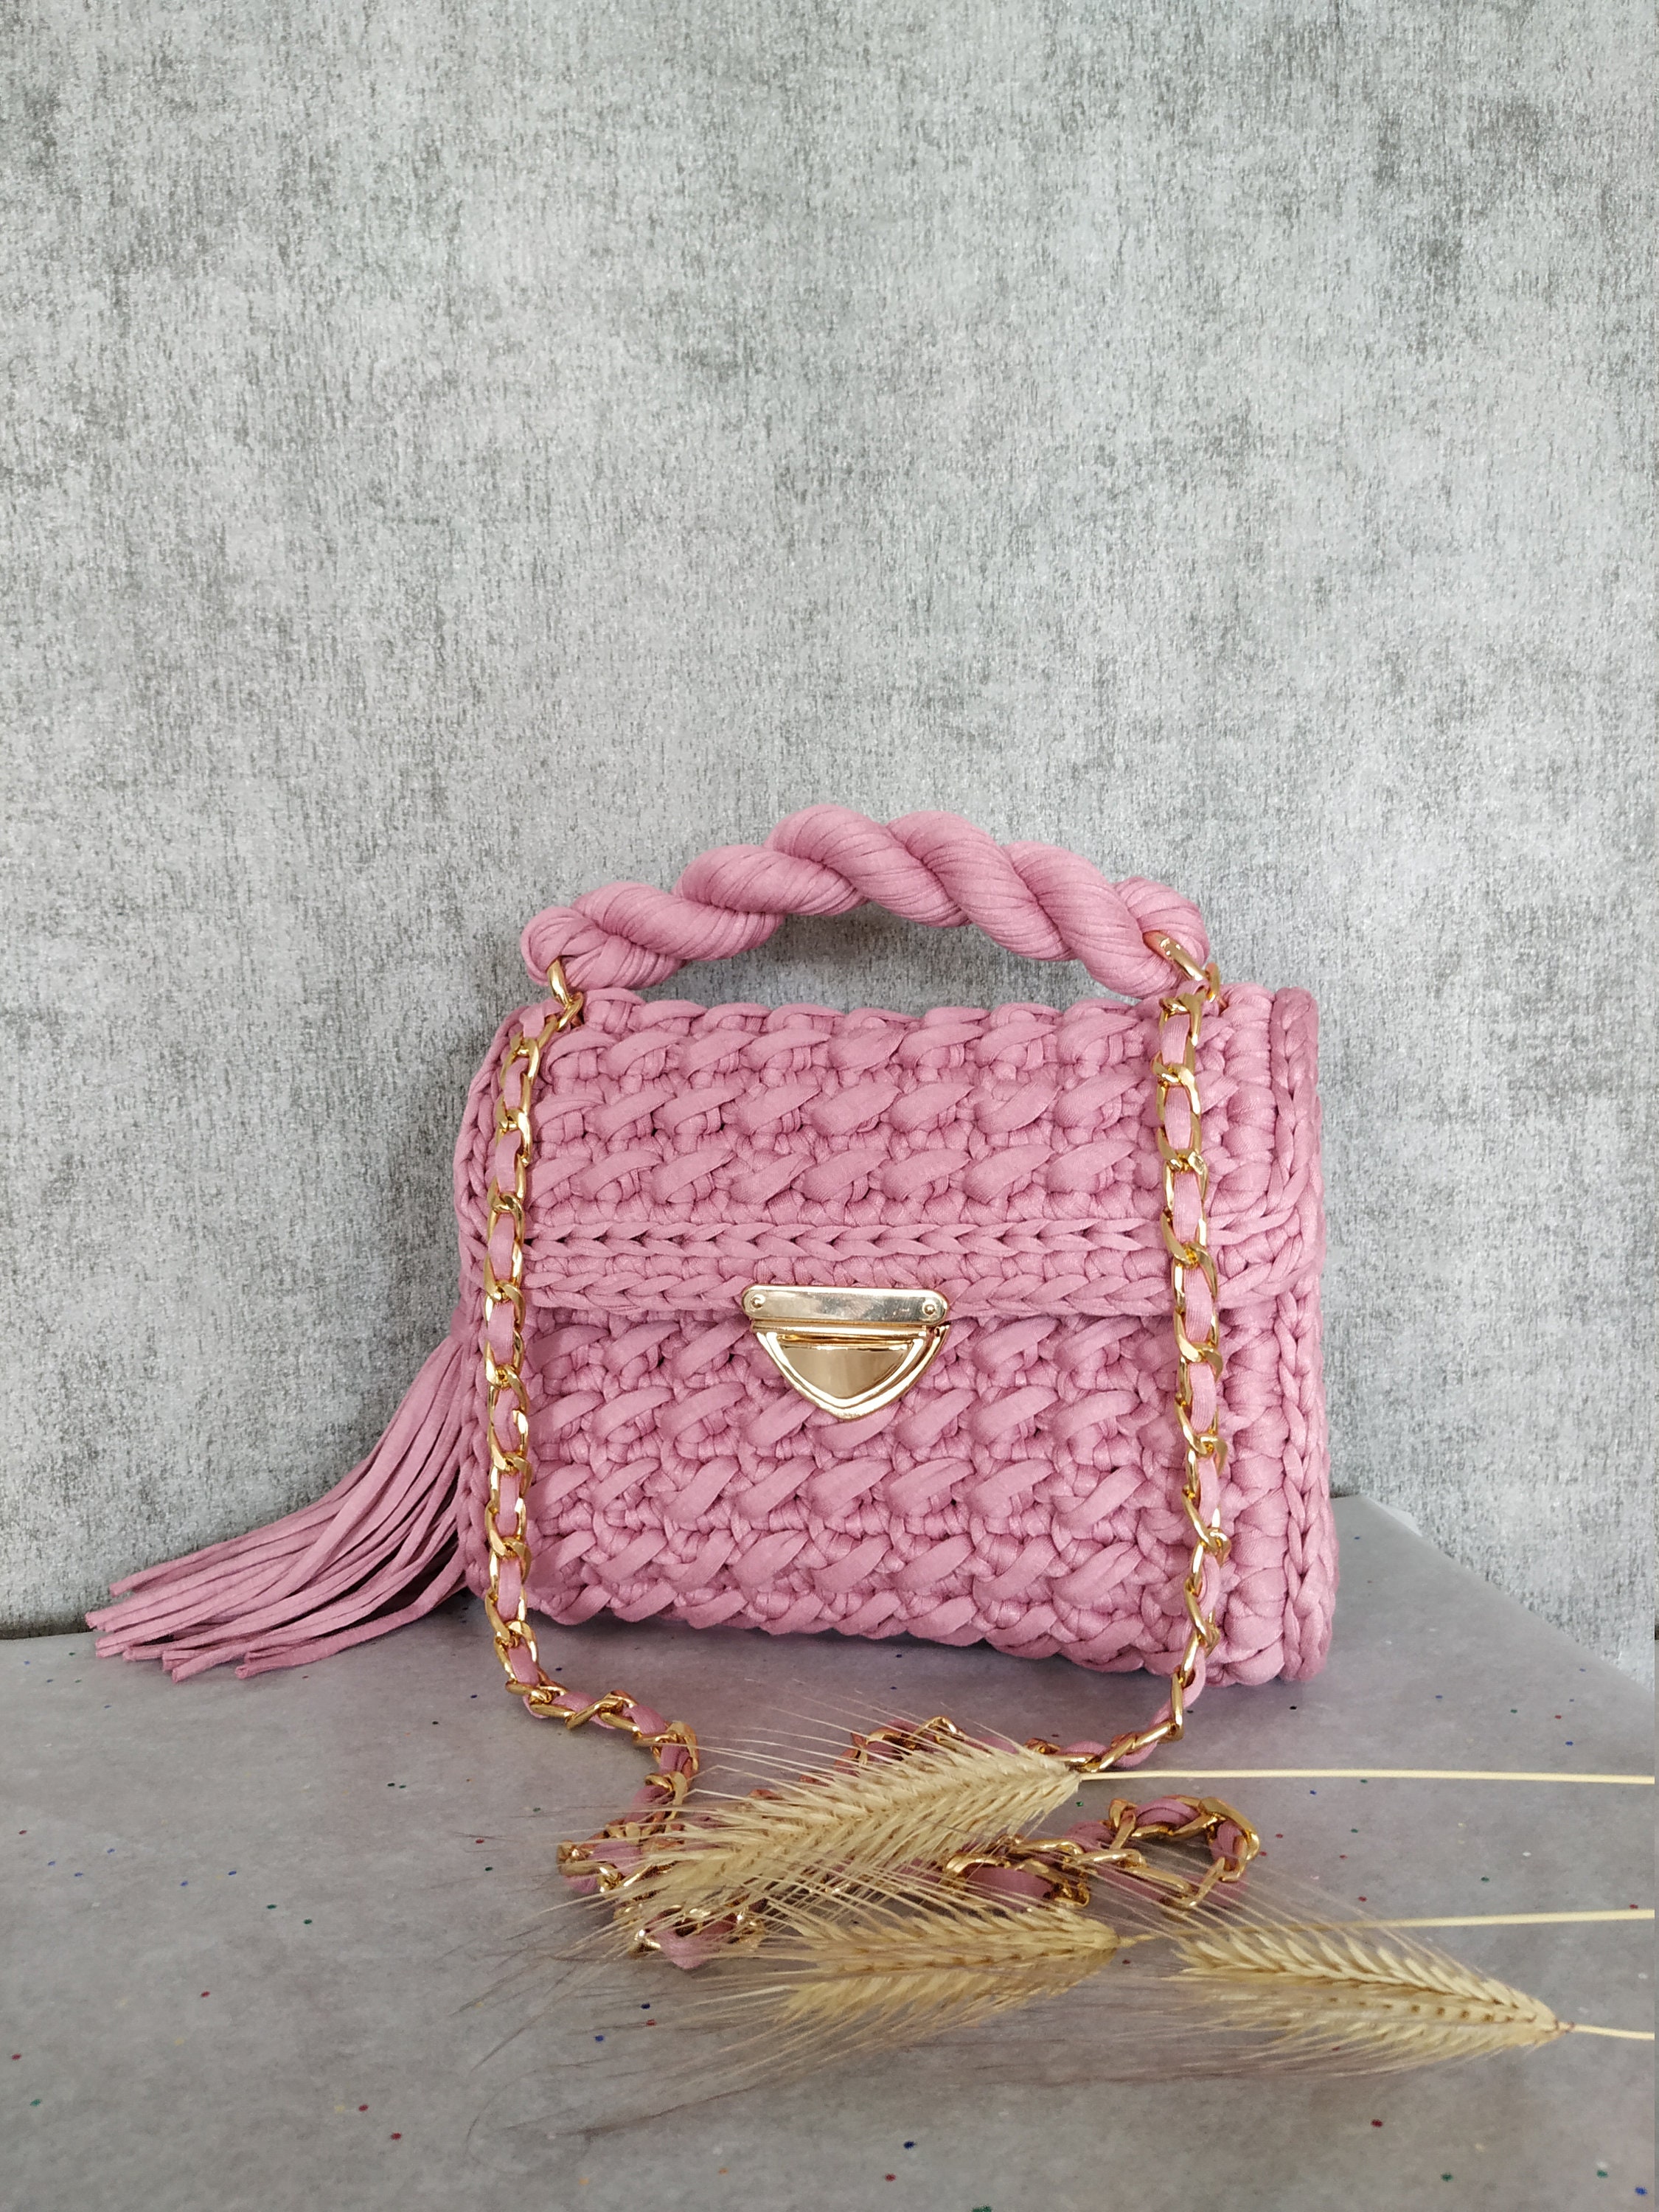 Handmade Pink Bag Crochet Bag Crochet Baguette Bag Crochet - Etsy